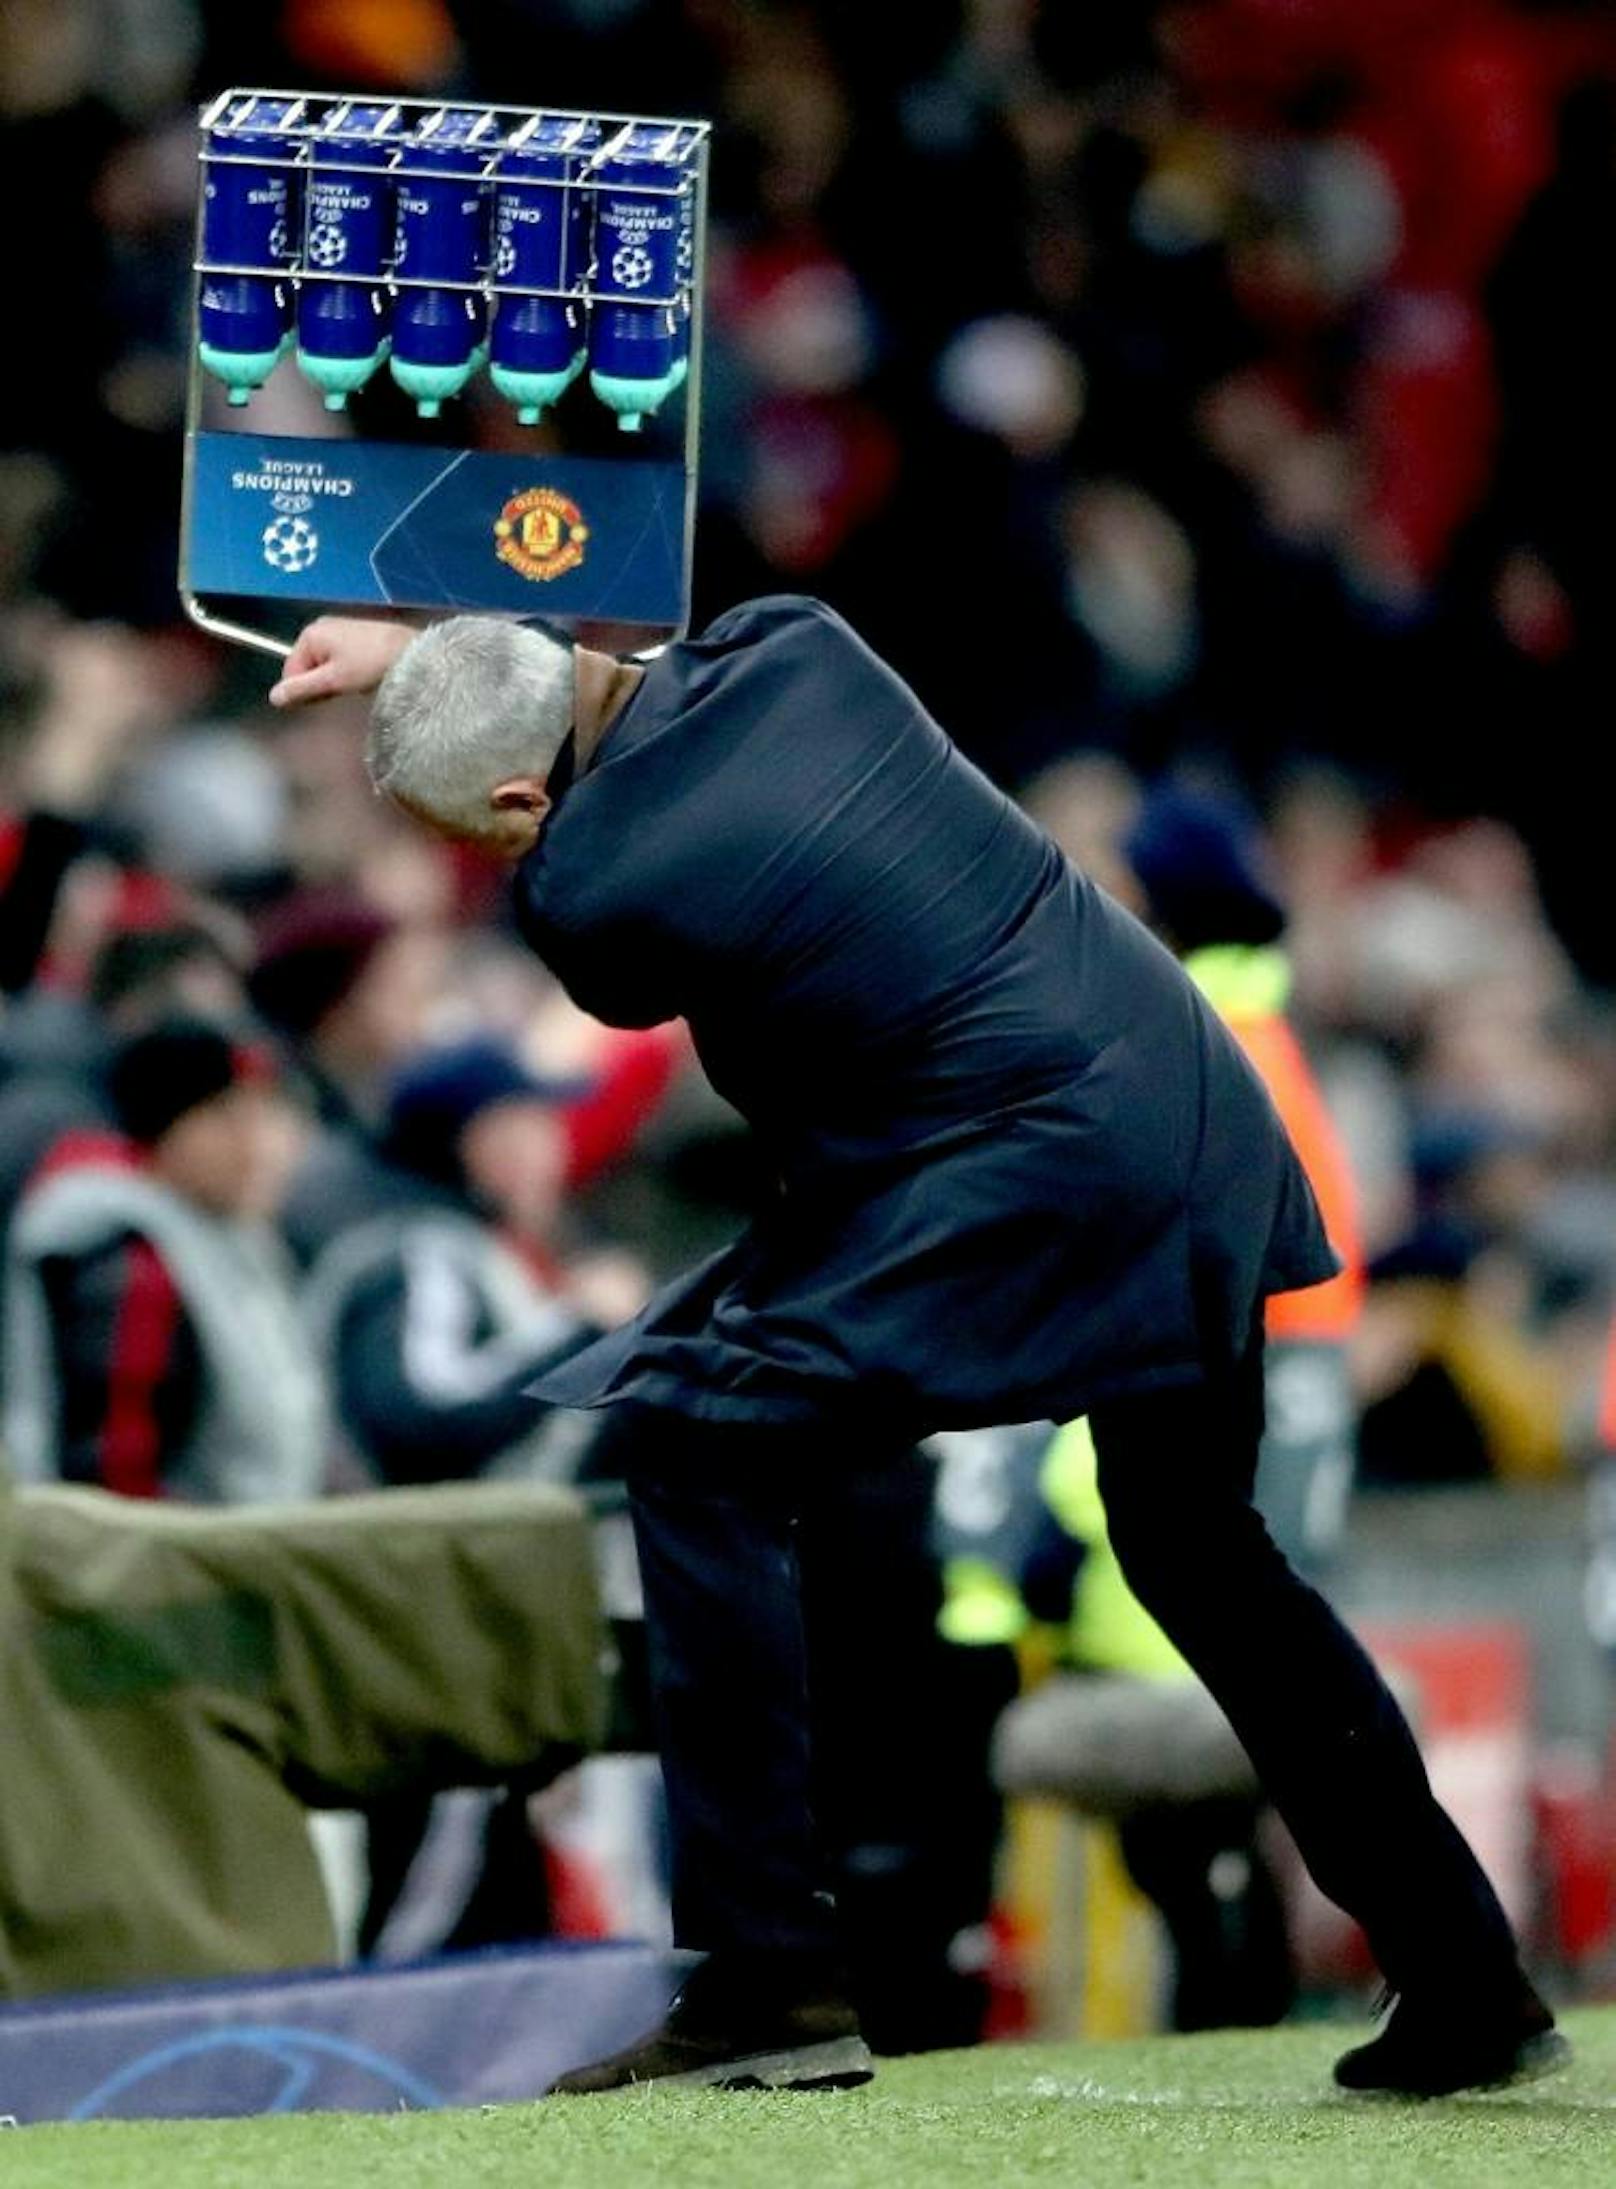 Manchester United schlug YB Bern in der Nachspielzeit. Jose Mourinho ging beim Jubel auf seine Flaschen los, herzte schließlich aber auch noch den Siegestorschützen Marouane Fellaini.